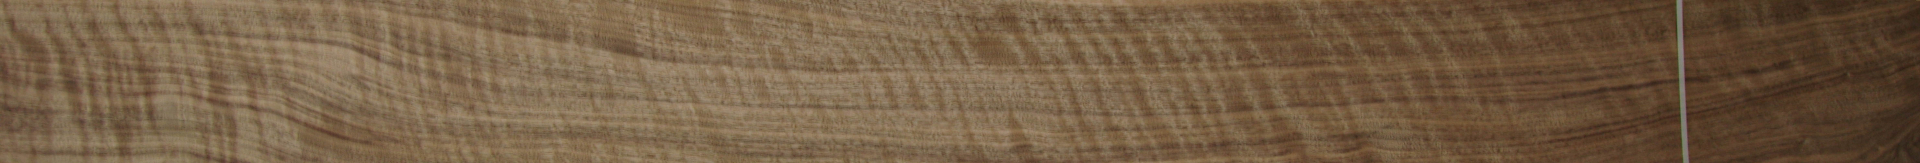 0,6mm Nussbaum amerikanisch (Riegel) Furnier 12,24m² E 32 255 15